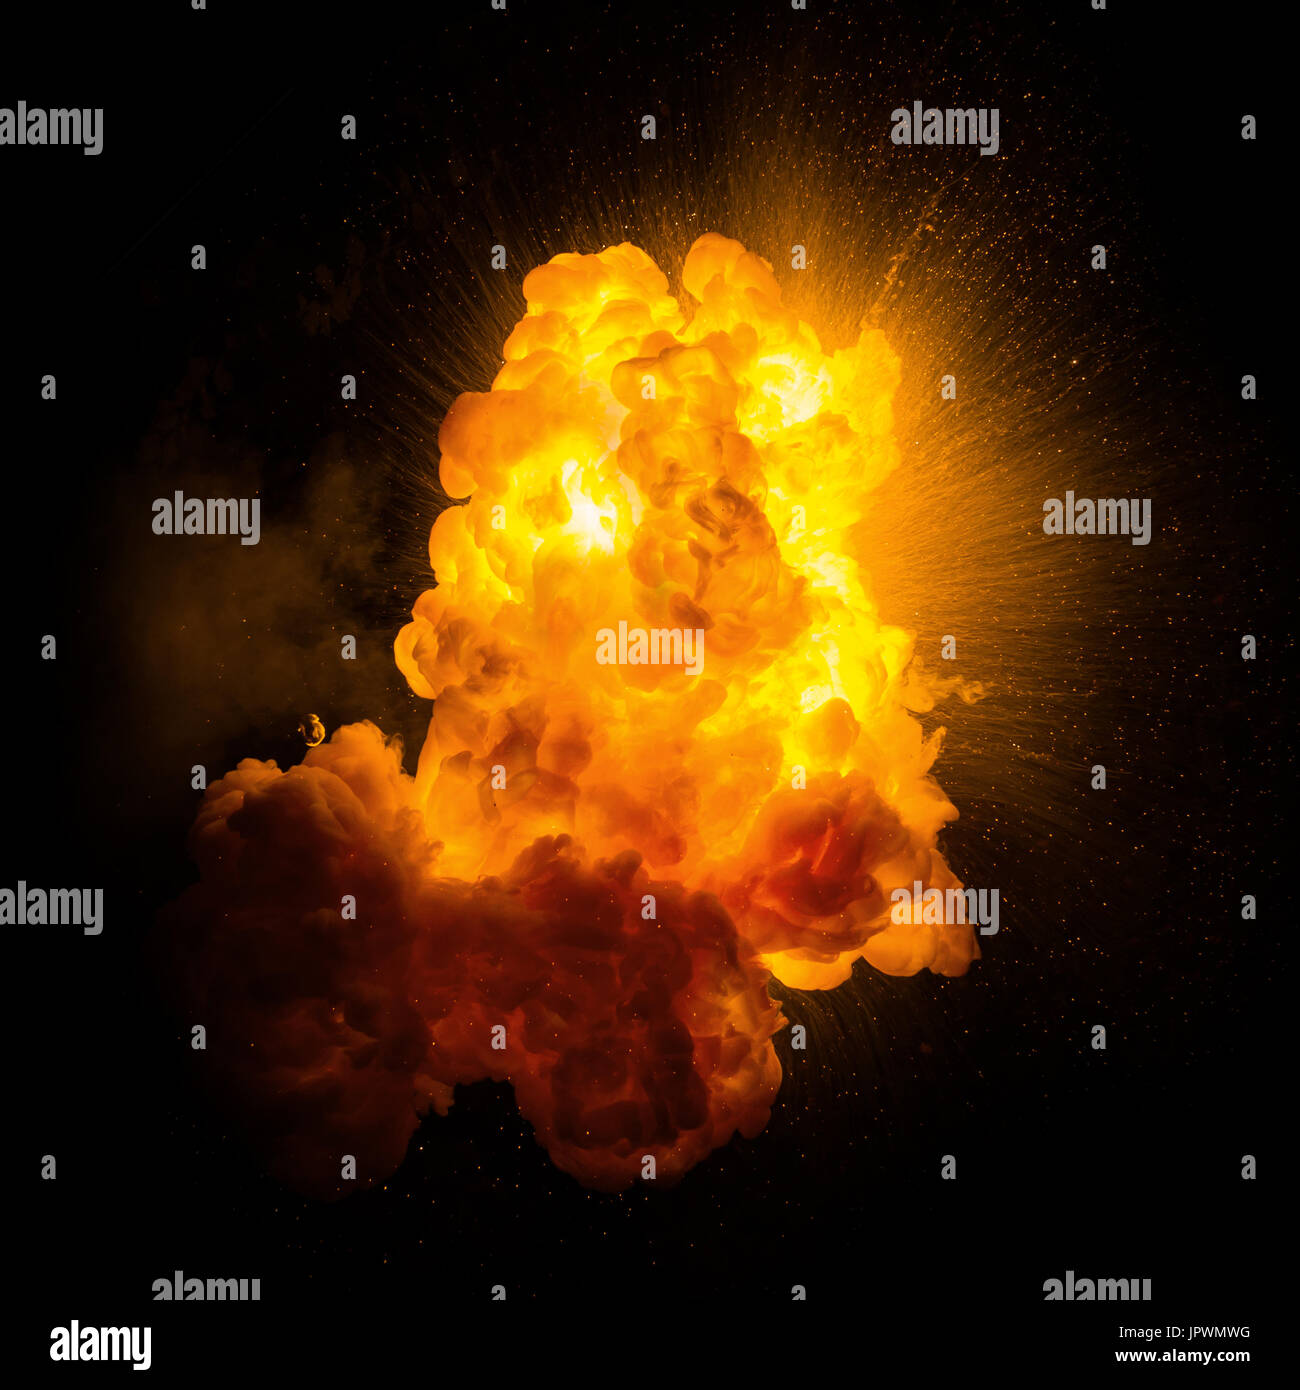 Fiery réalistes avec une explosion d'étincelles sur un arrière-plan noir Banque D'Images